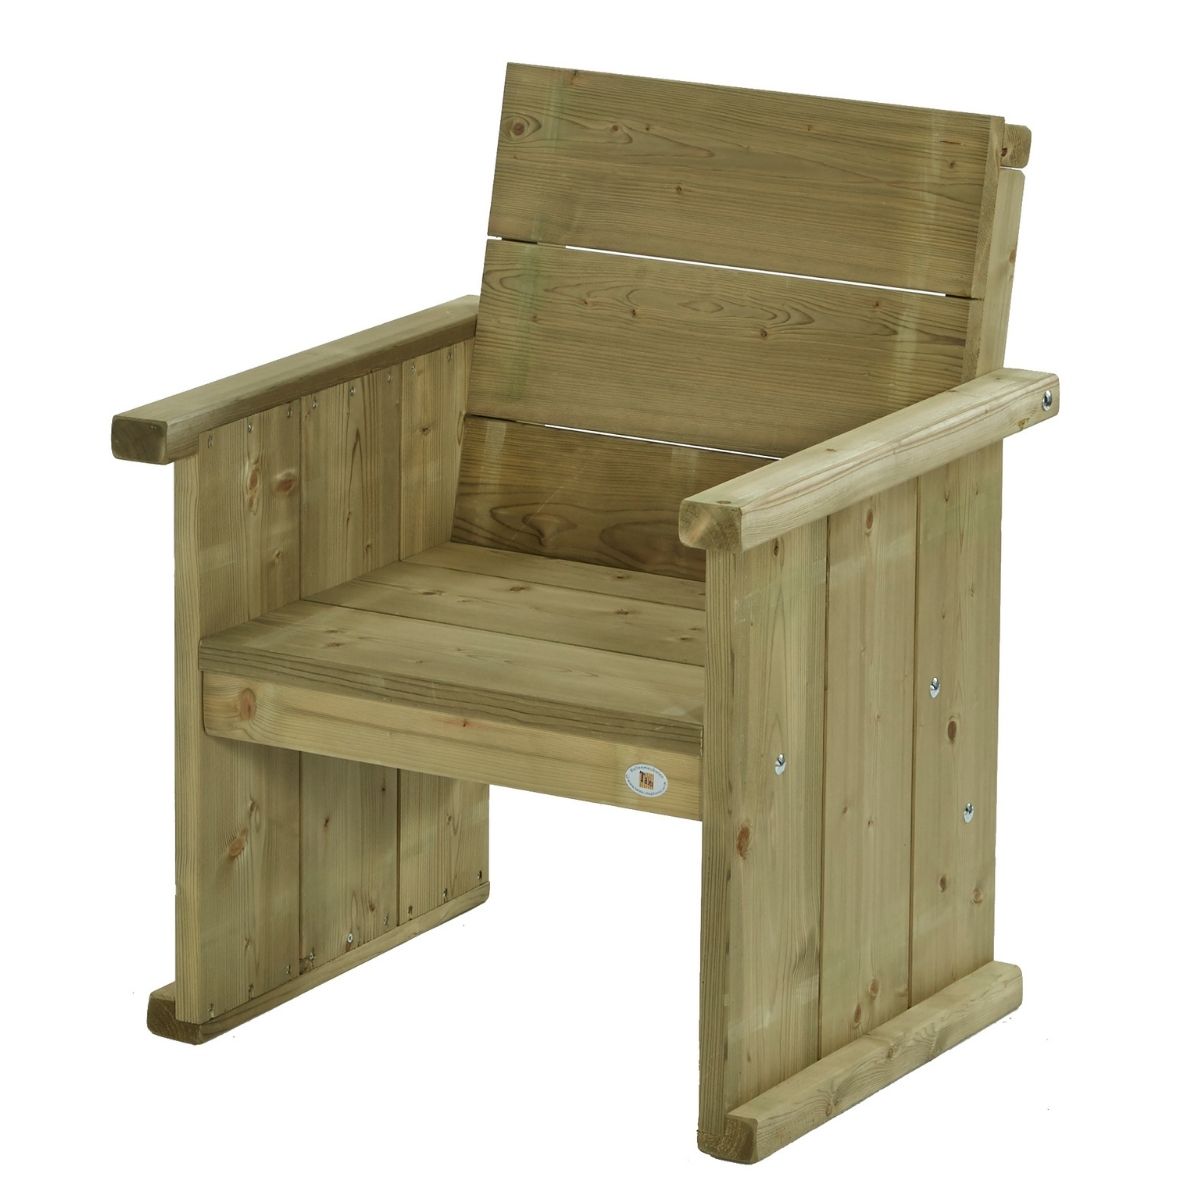 houten stoel voor een persoon zit goed is stevig en gaat lang mee 